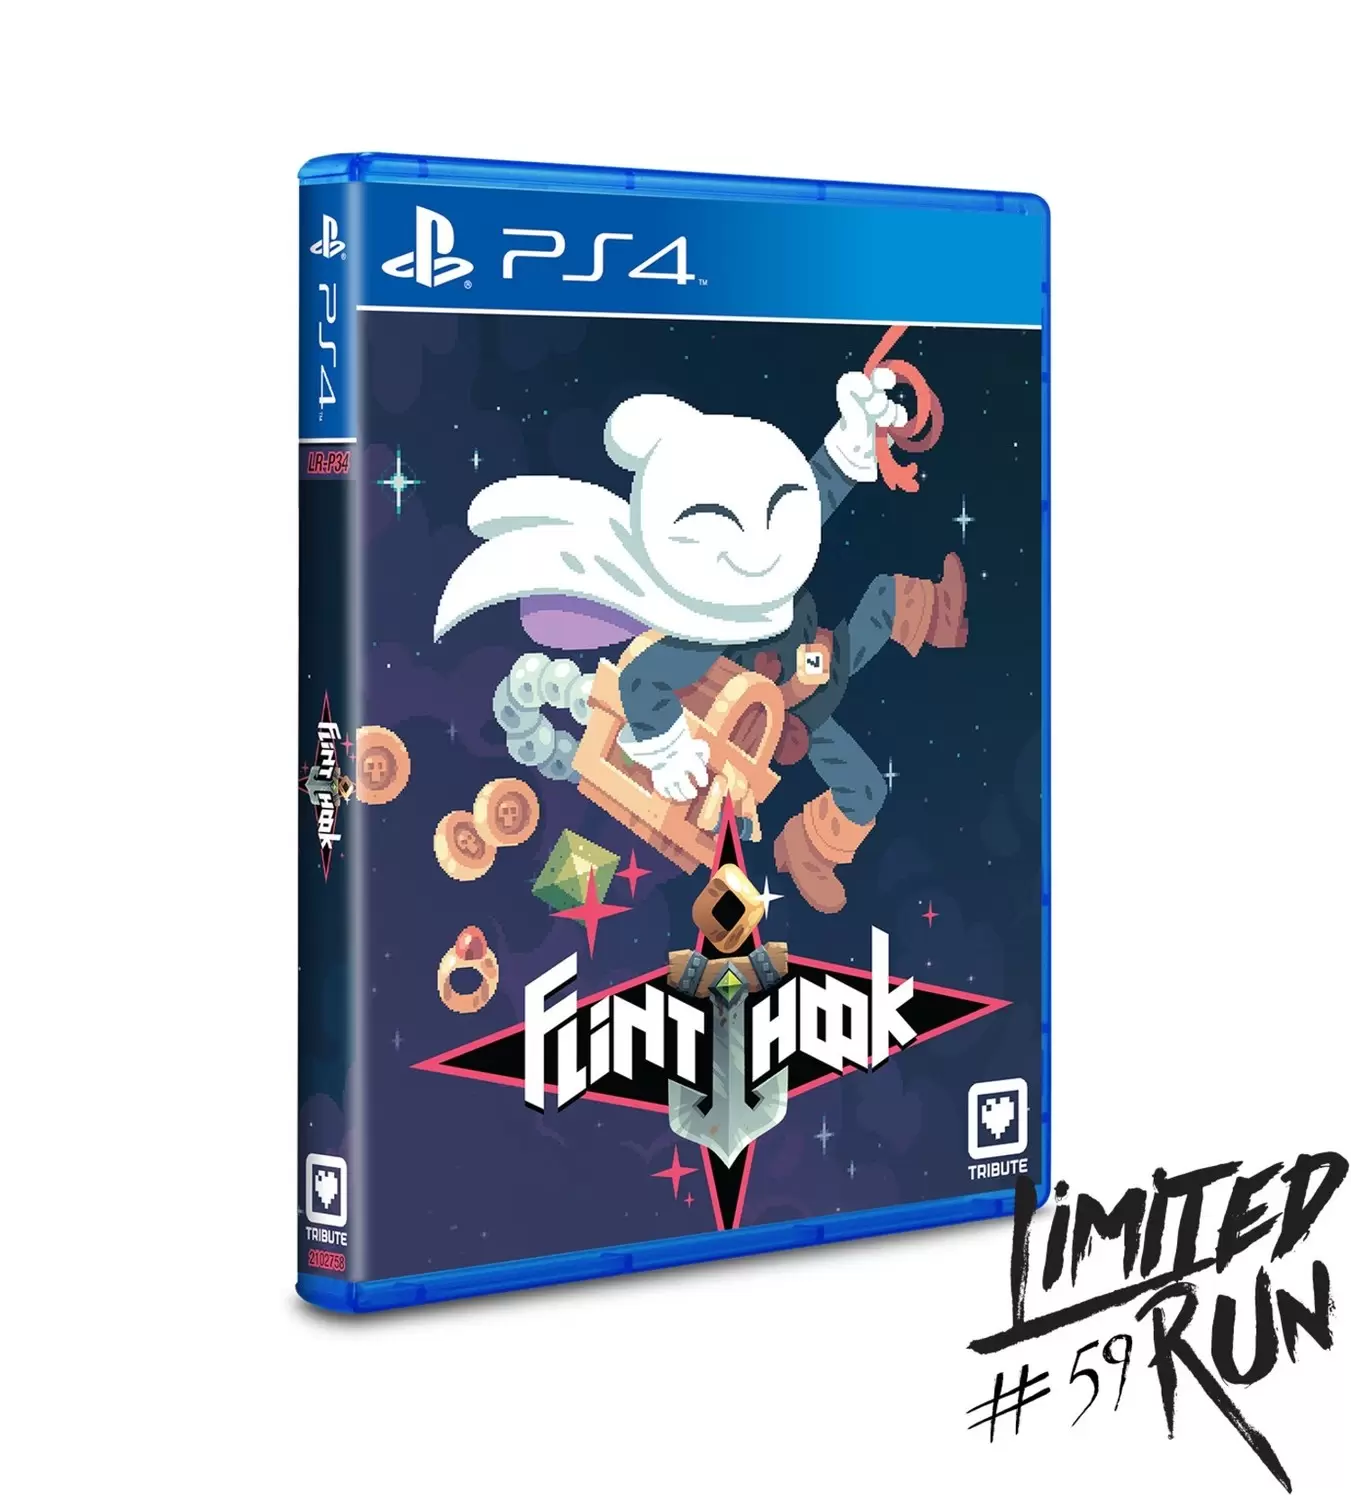 PS4 Games - Flinthook